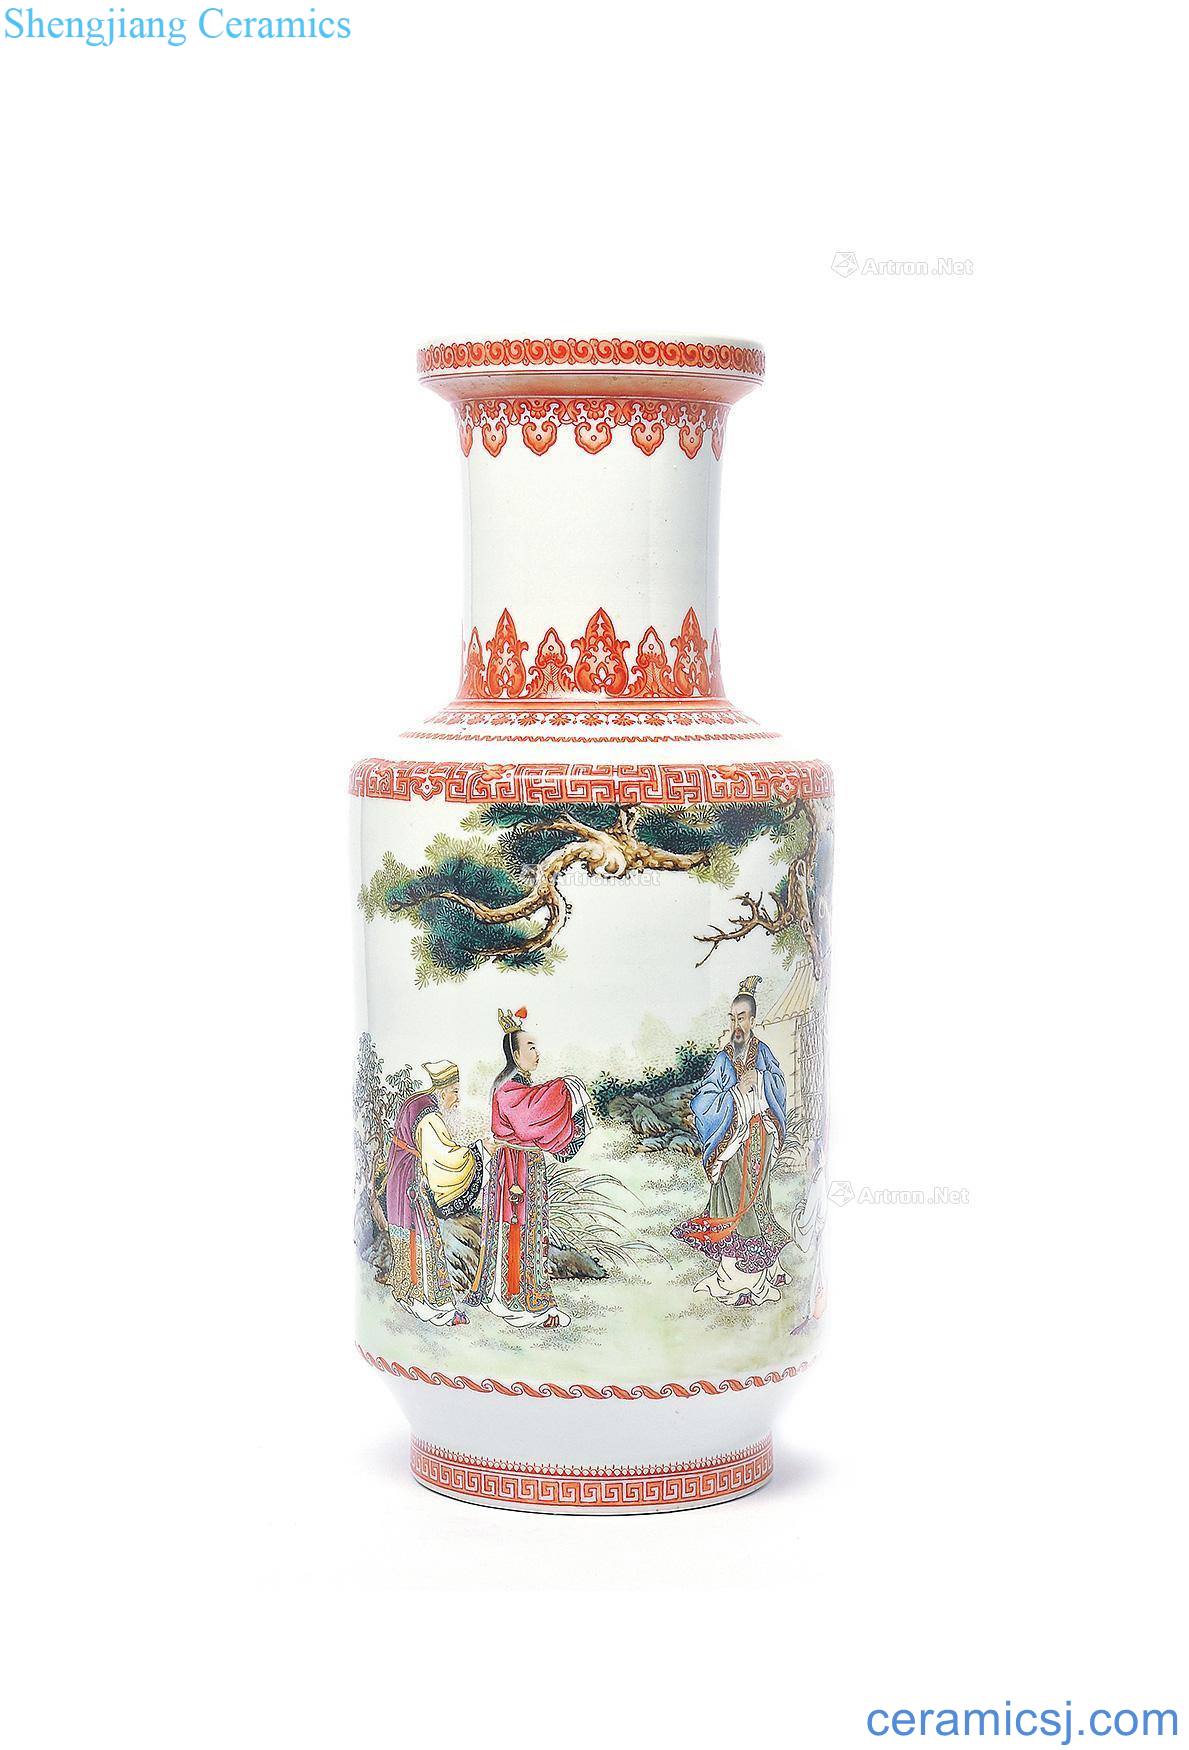 In 1958, pastel qu yuan a bottle